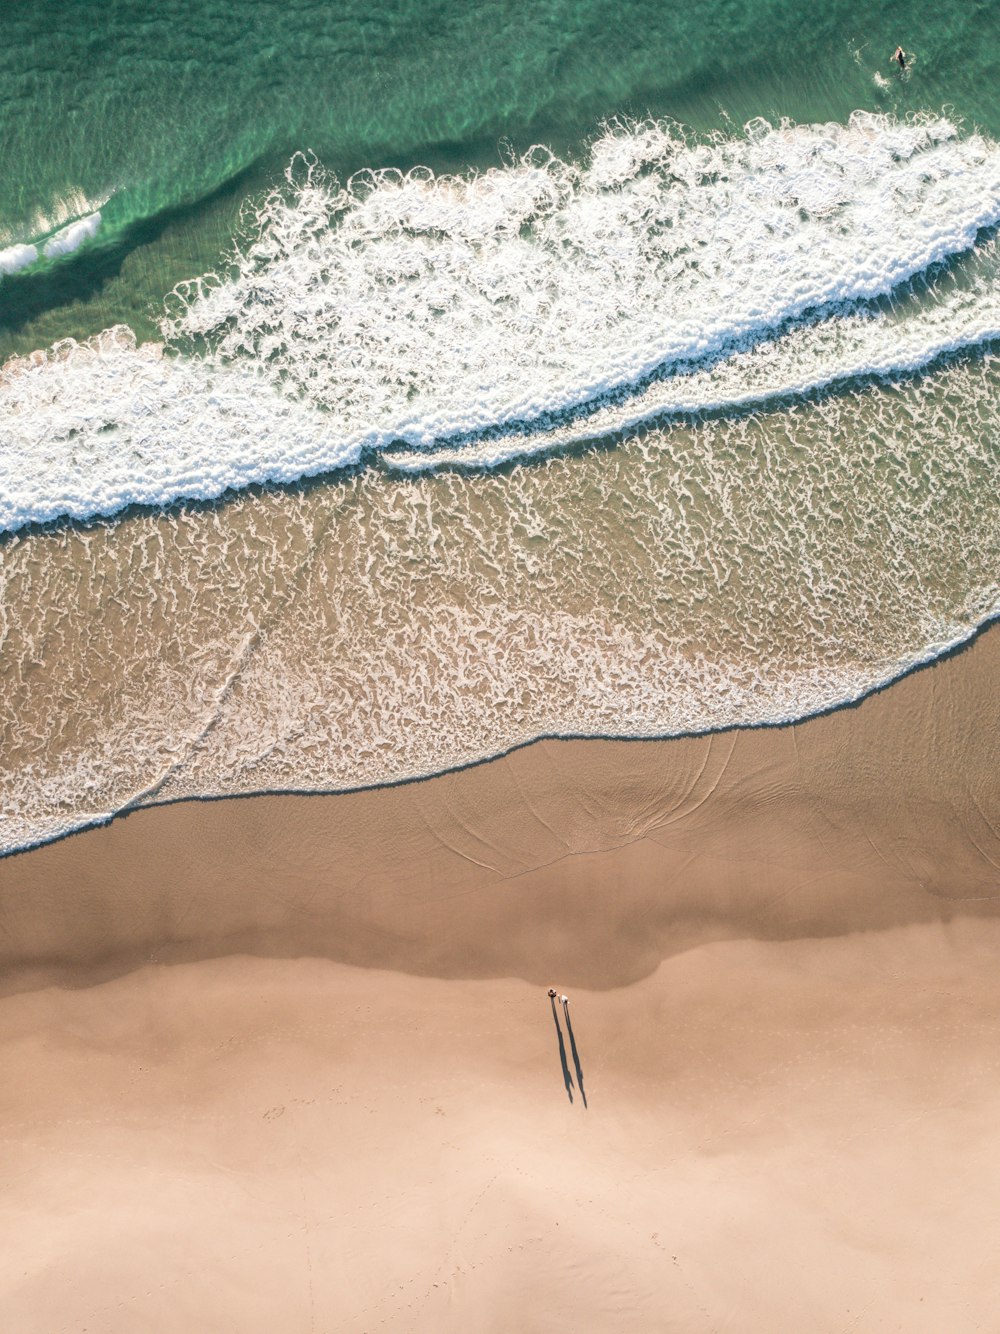 Imágenes de Playa De Drone | Descarga imágenes gratuitas en Unsplash